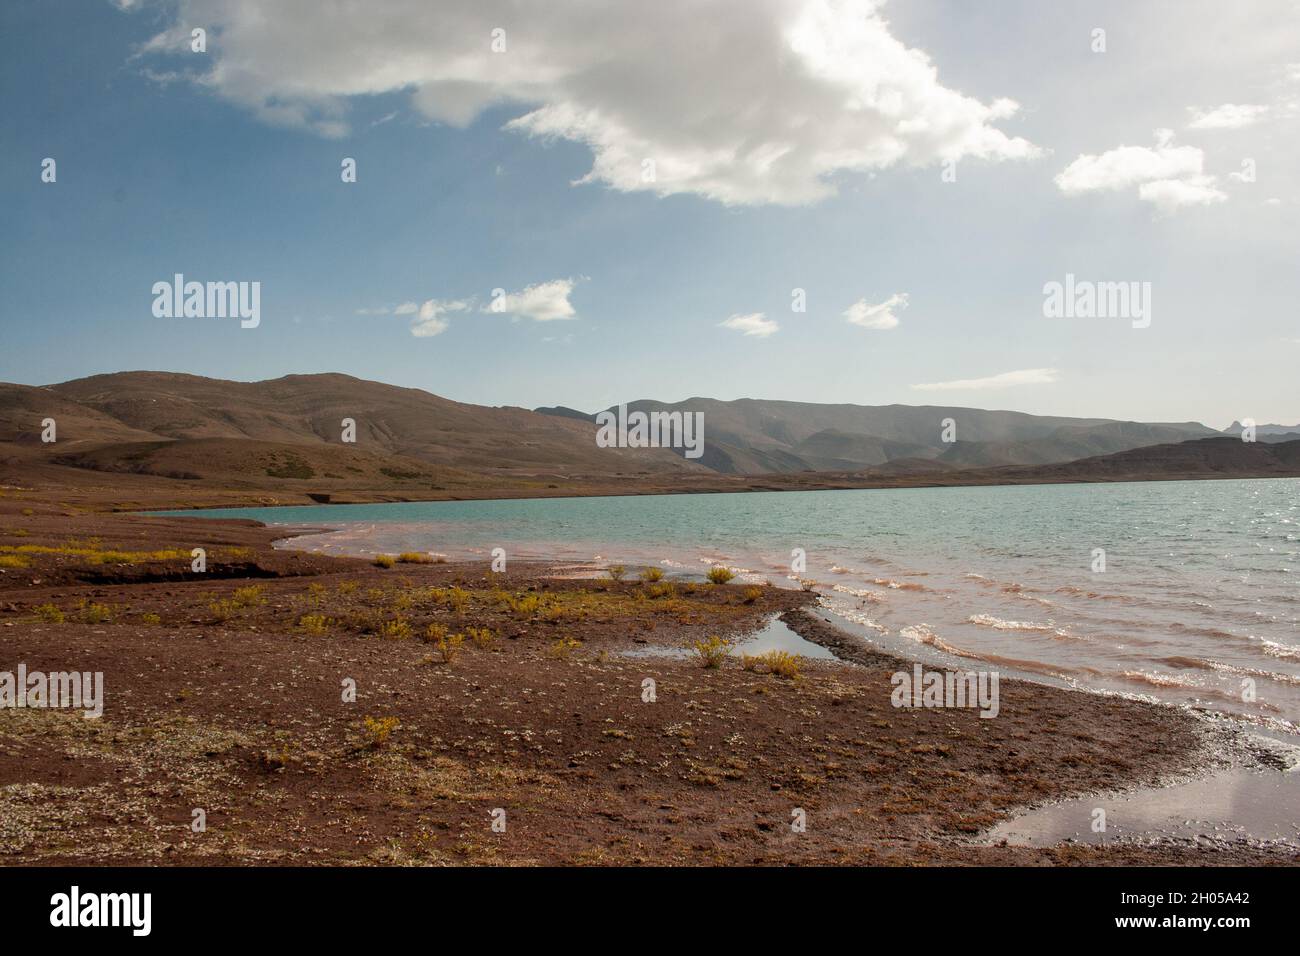 Paesaggio marocchino con lago e deserto Foto Stock